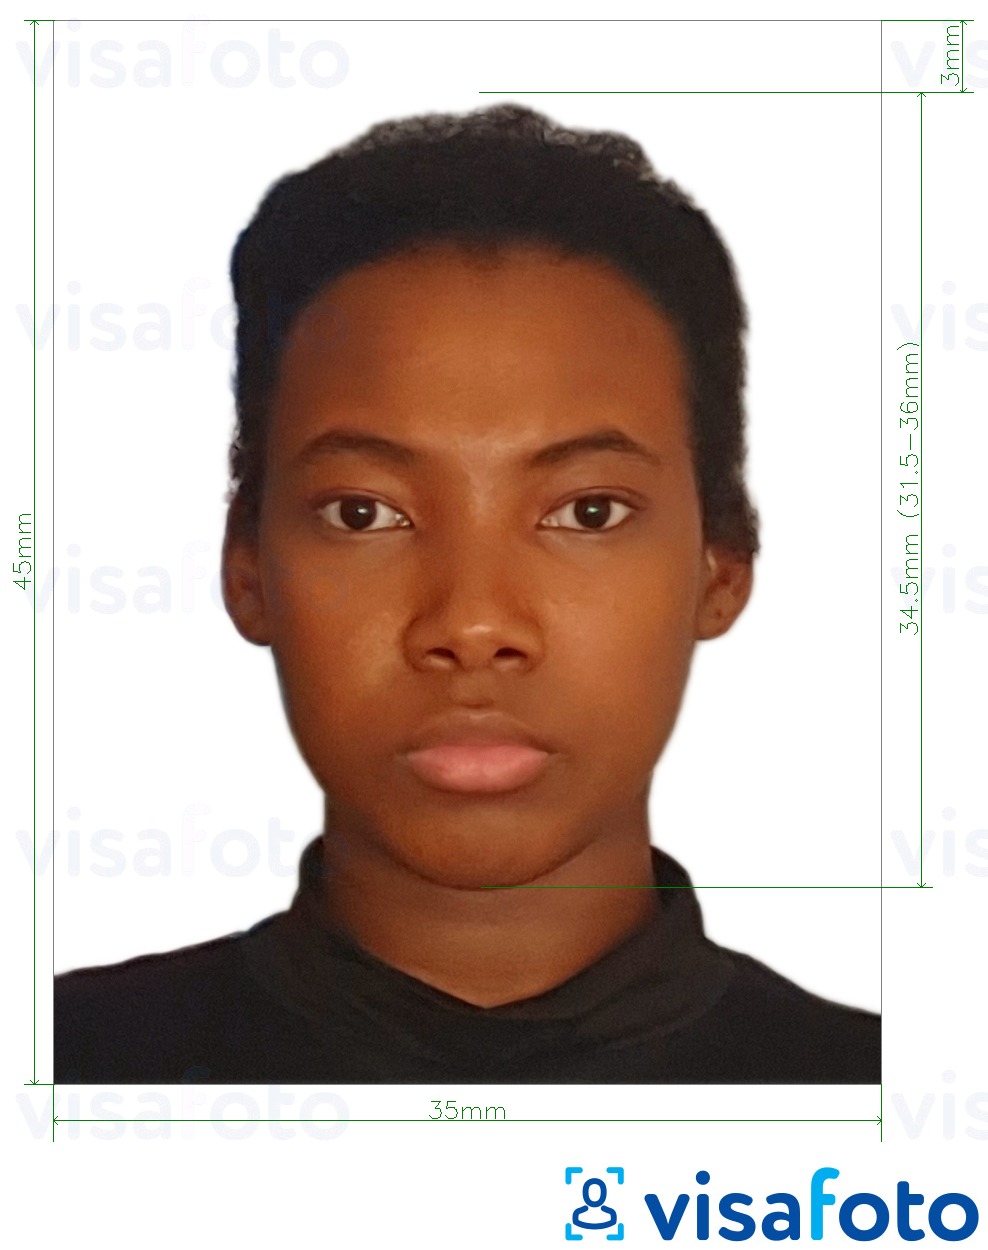 Voorbeeld van foto voor Liberia paspoort 35x45 mm (3,5x4,5 cm) met exacte maatspecificatie